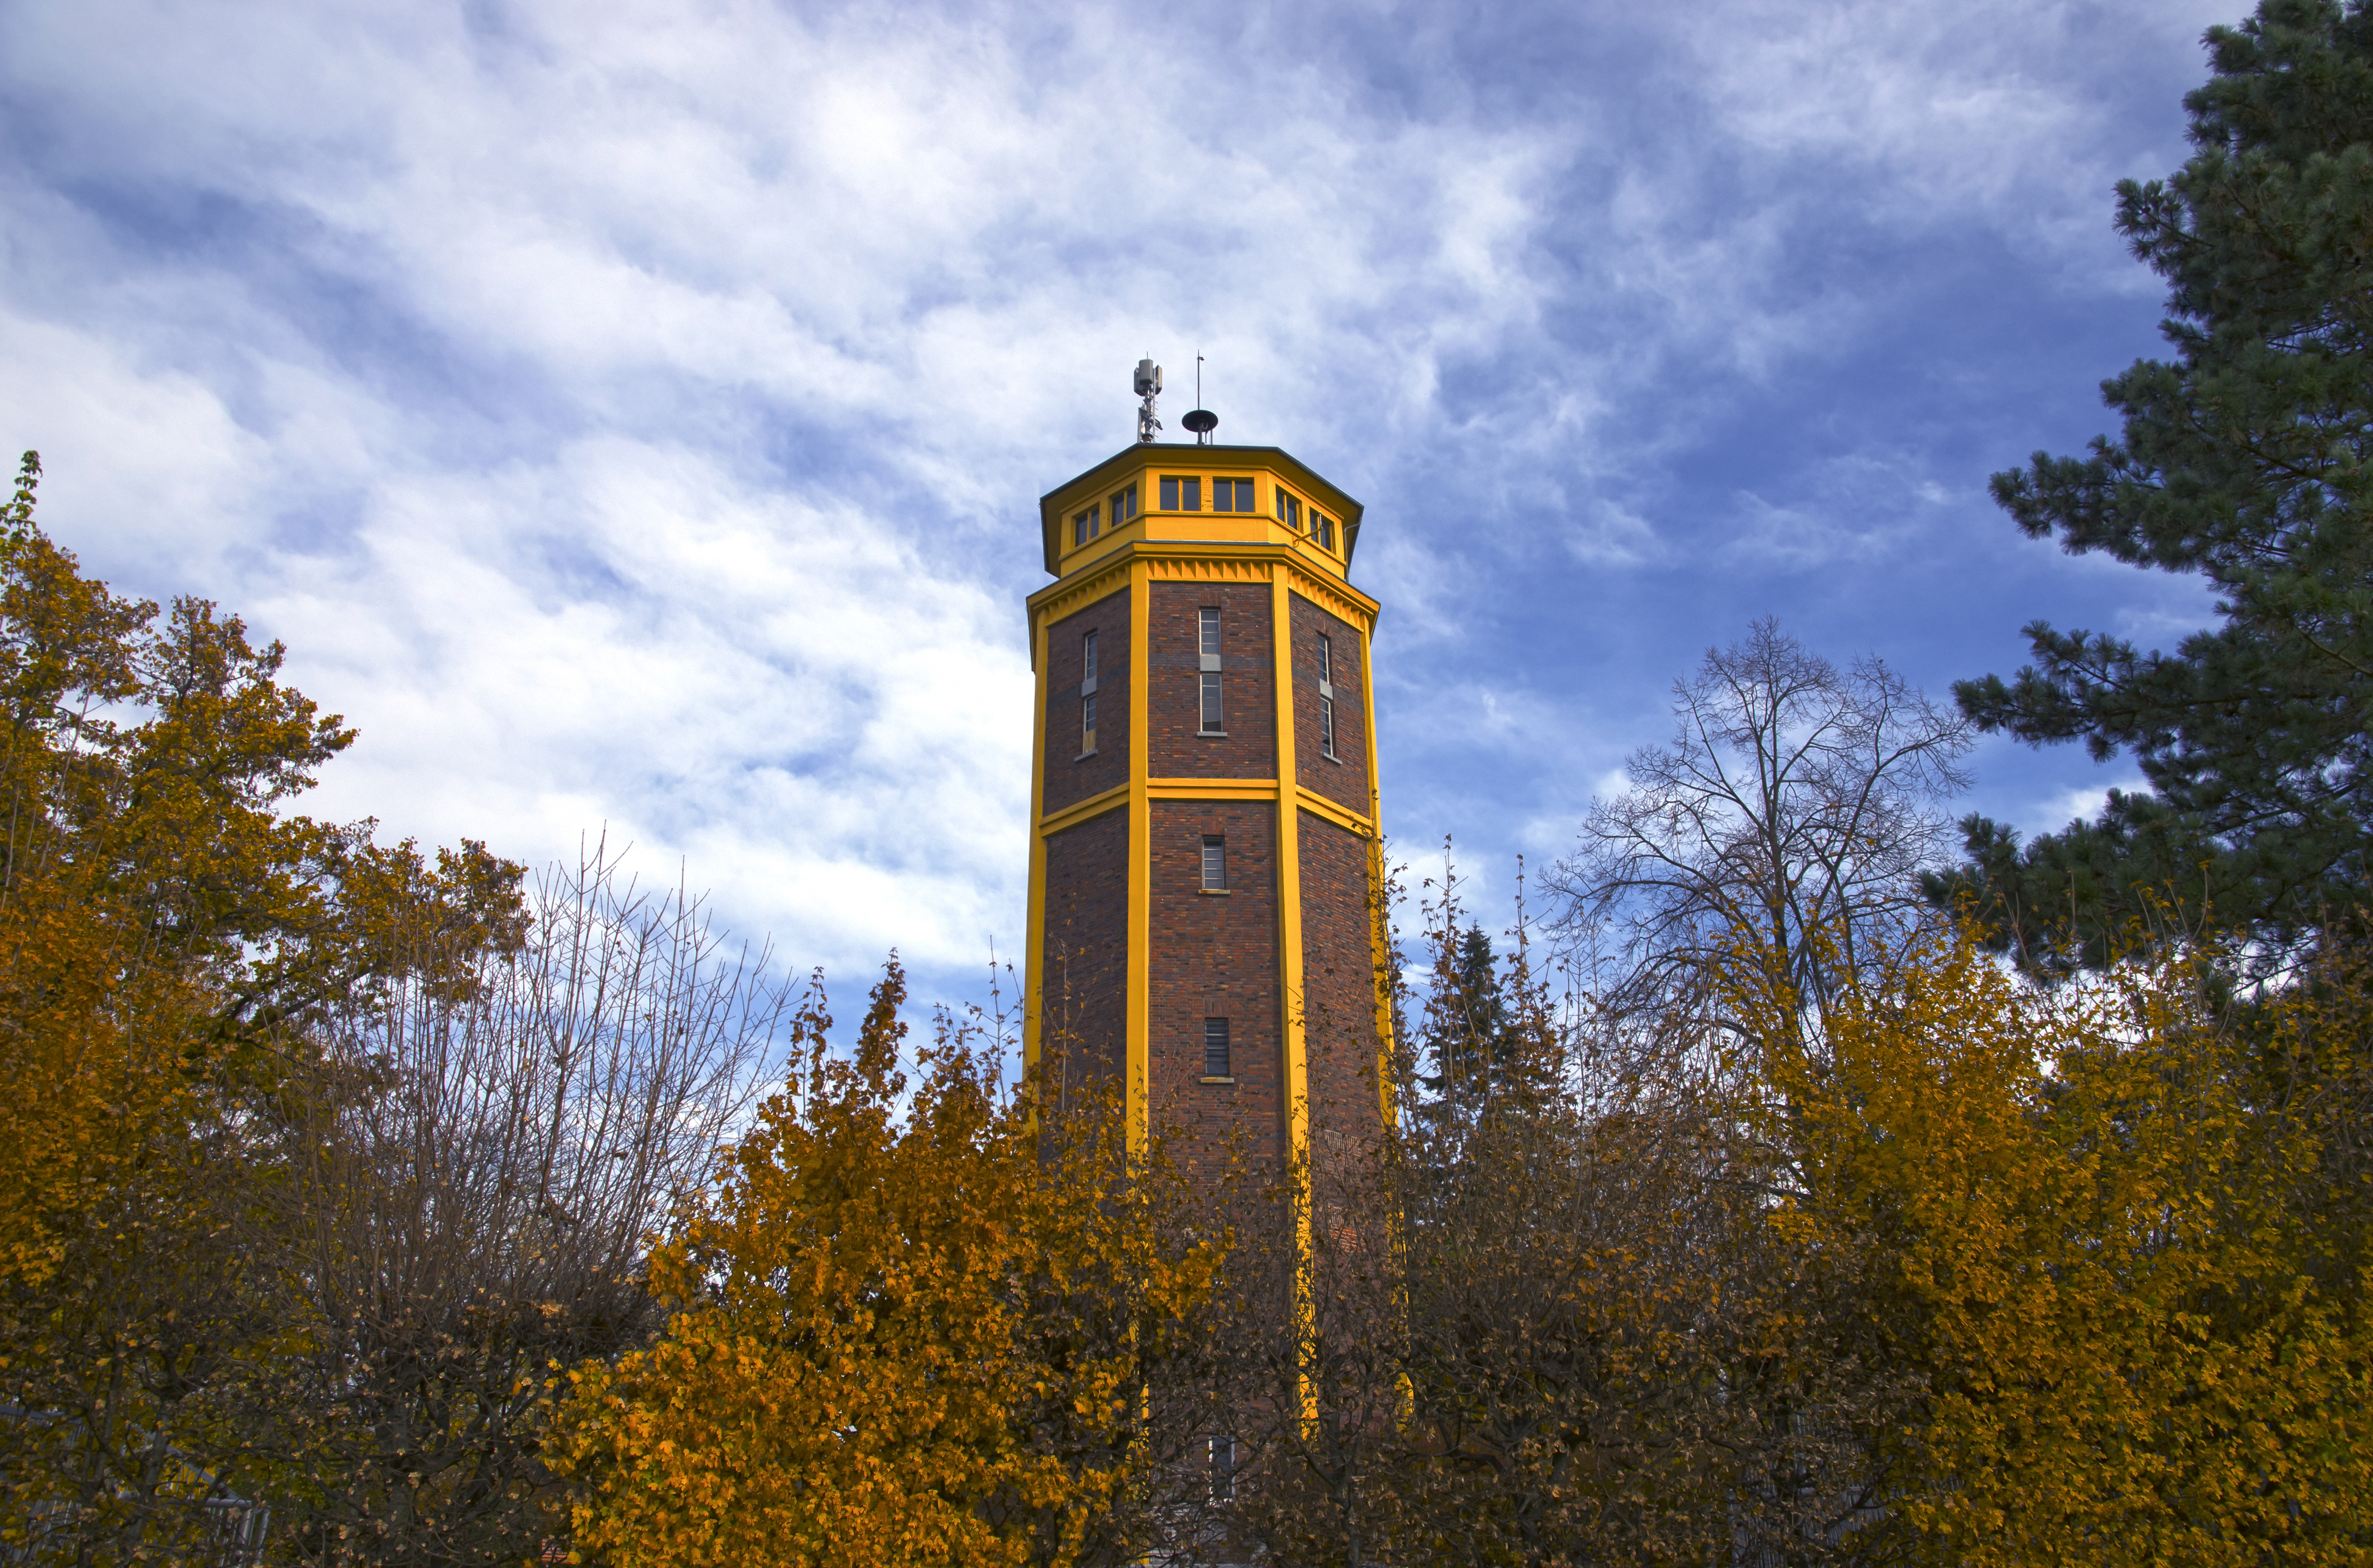 Wasserturm Mörfelden - Mörfelden-Walldorf - water tower - château d'eau - 01